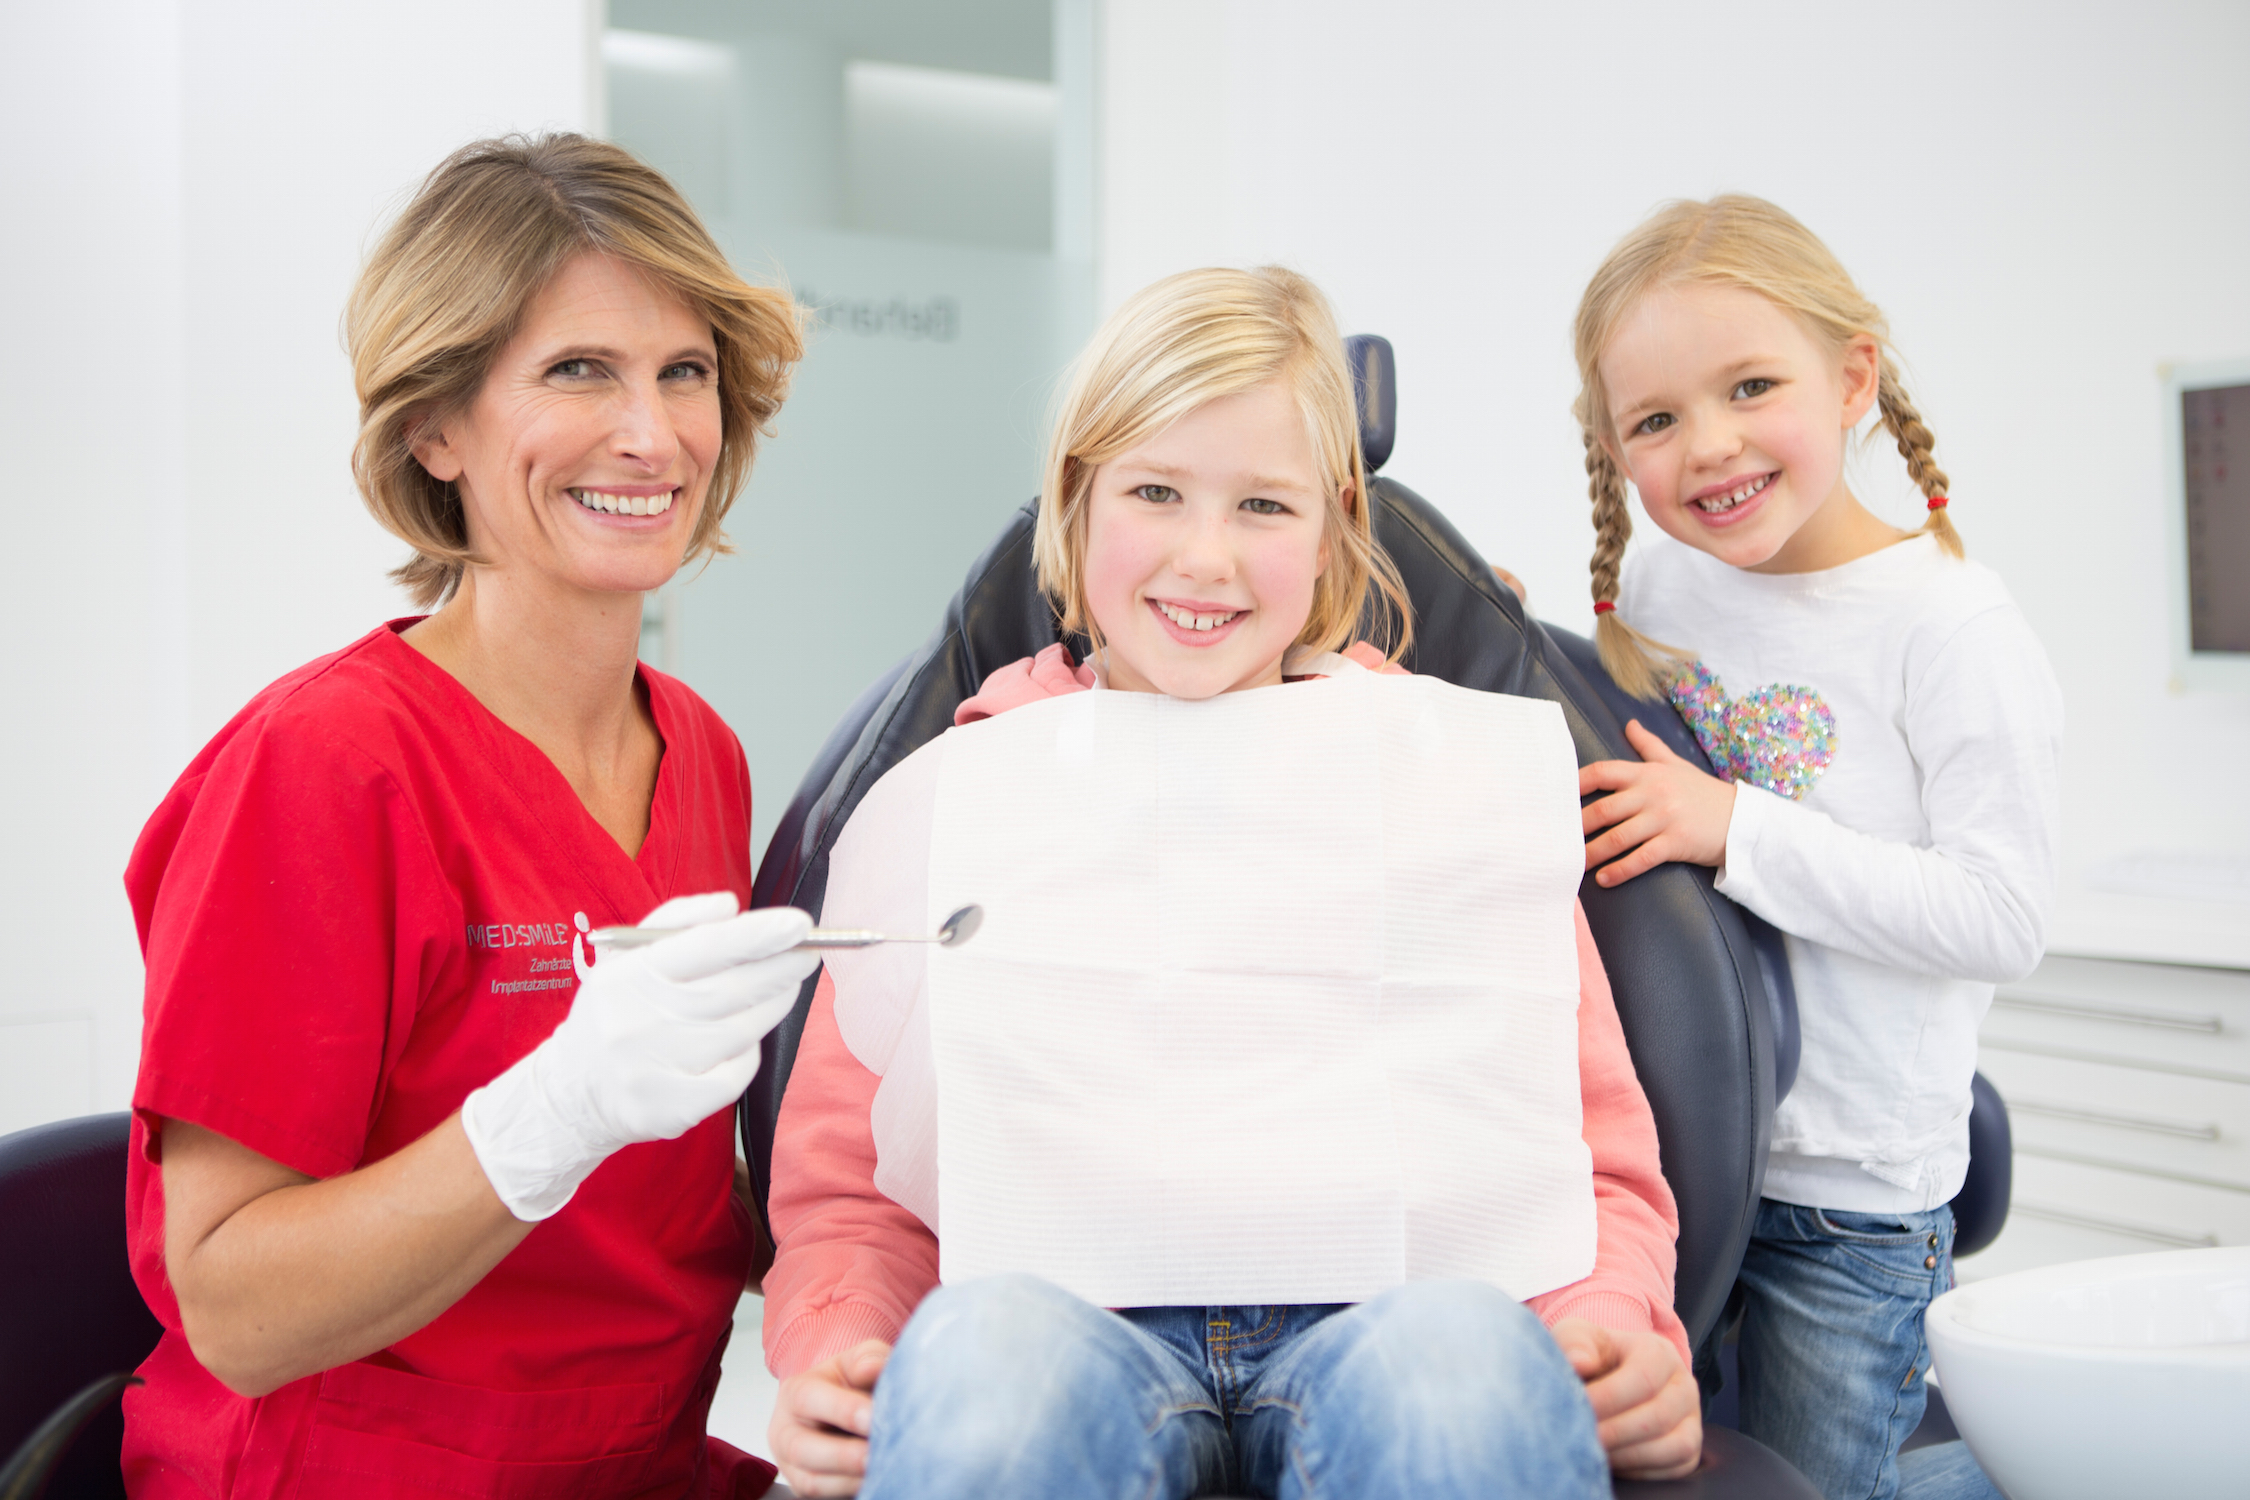 Kinderzahnheilkunde in der Zahnarztpraxis MED:SMILE in Mannheim